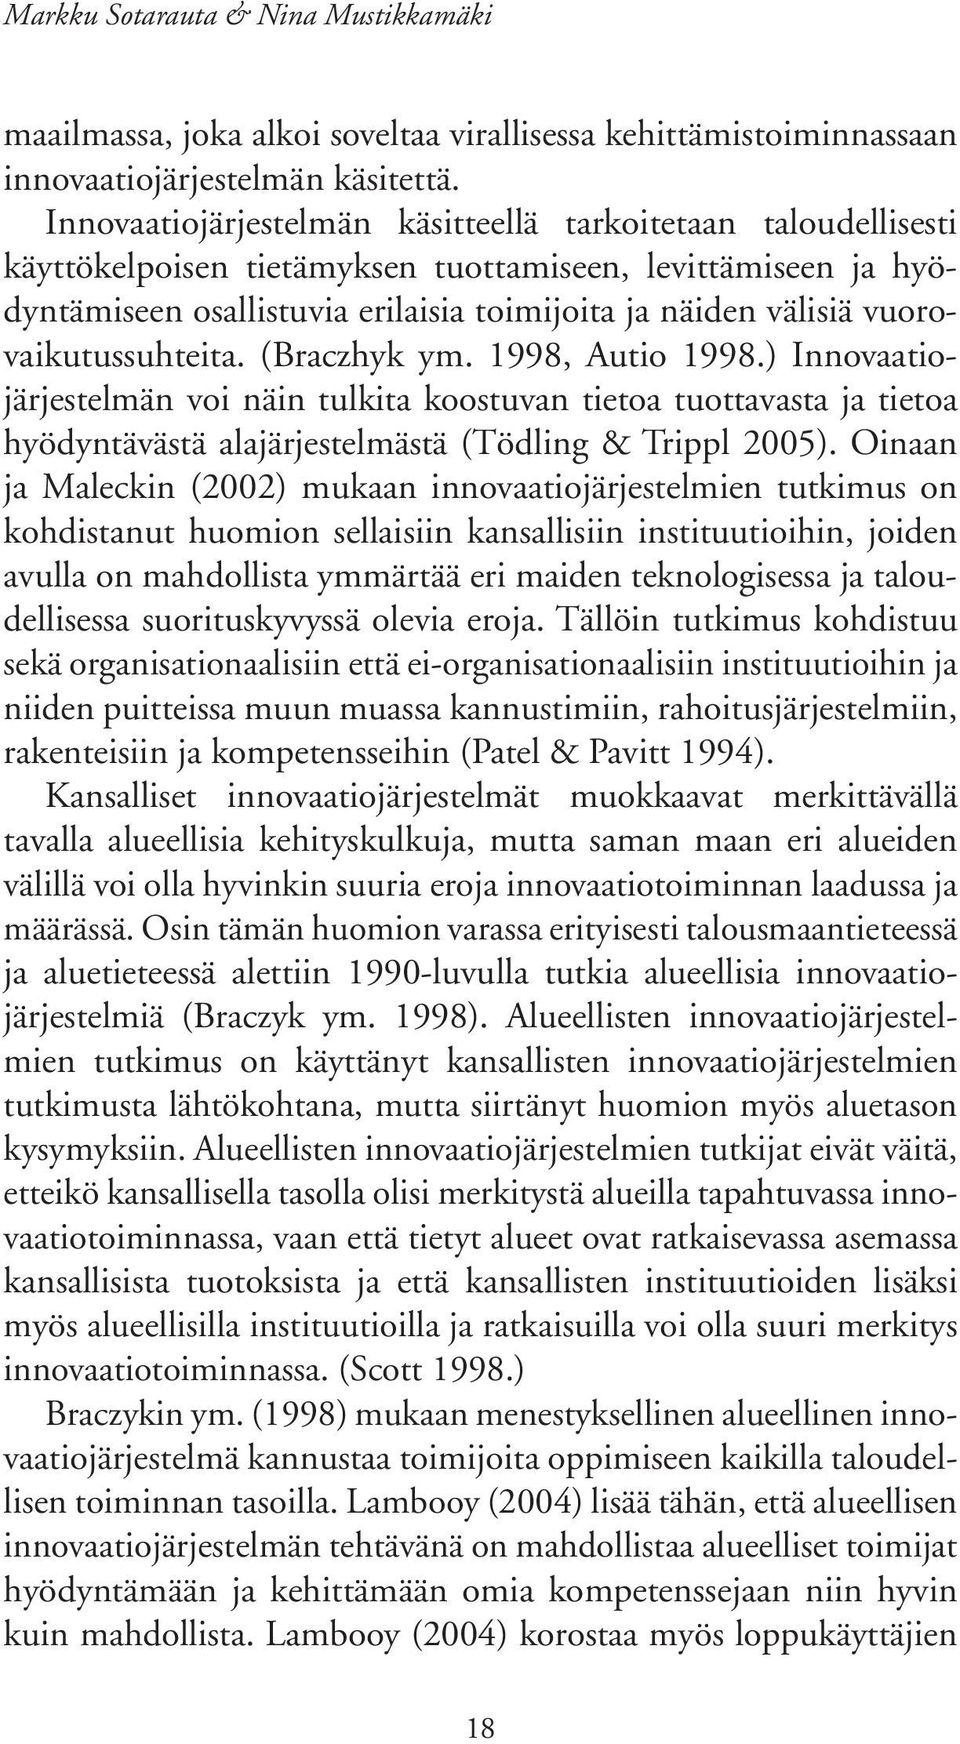 vuorovaikutussuhteita. (Braczhyk ym. 1998, Autio 1998.) Innovaatiojärjestelmän voi näin tulkita koostuvan tietoa tuottavasta ja tietoa hyödyntävästä alajärjestelmästä (Tödling & Trippl 2005).